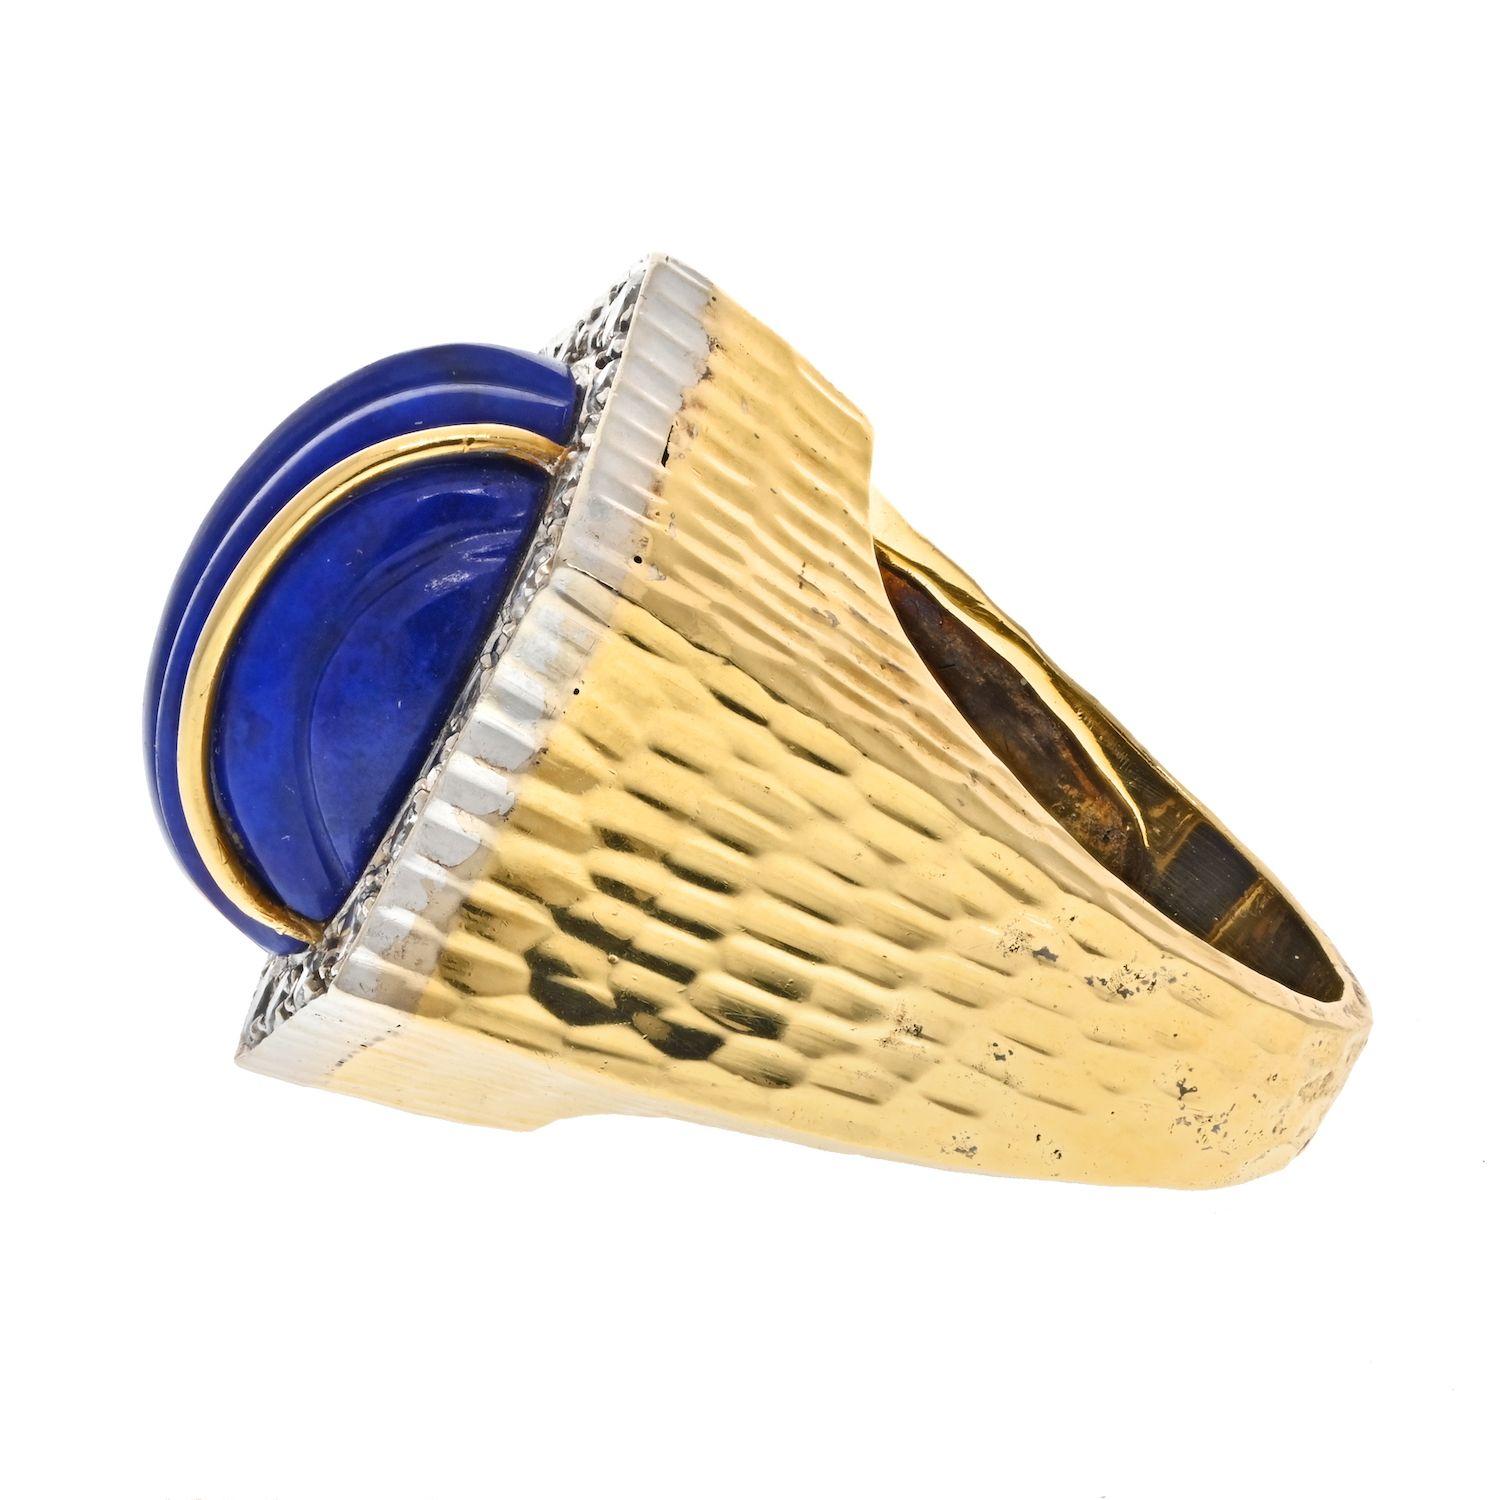 Der Ring aus Gelbgold mit Lapislazuli und Diamanten von David Webb ist ein wunderschönes und einzigartiges Schmuckstück. Lapislazuli ist ein Halbedelstein, der seit der Antike wegen seiner intensiven blauen Farbe geschätzt wird. Der